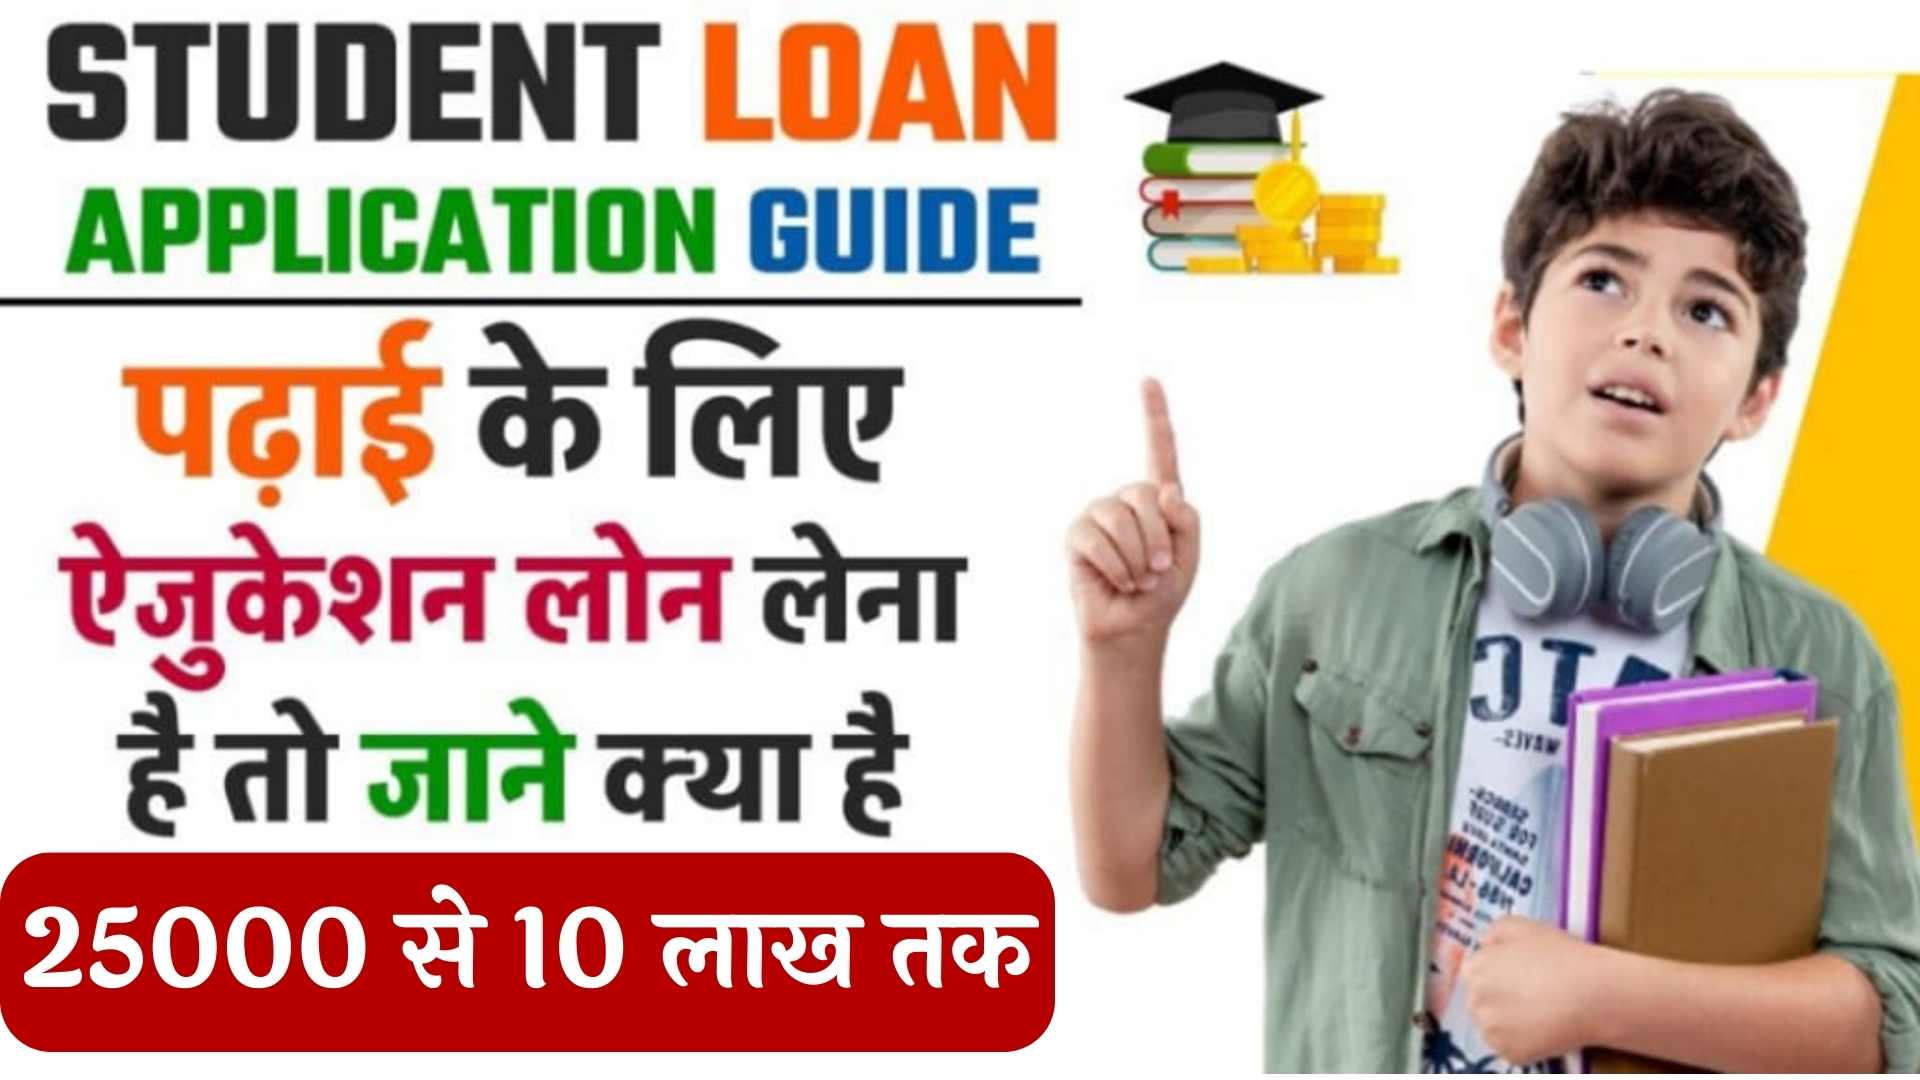 Student Bank Se Loan Kaise Le : विद्यार्थी बैंक से 25000 रुपए से 10 लाख रुपए तक आसानी से लोन कैसे ले सकते हैं यहां देखकर योग्यता एवं दस्तावेज कौन-कौन से चाहिए